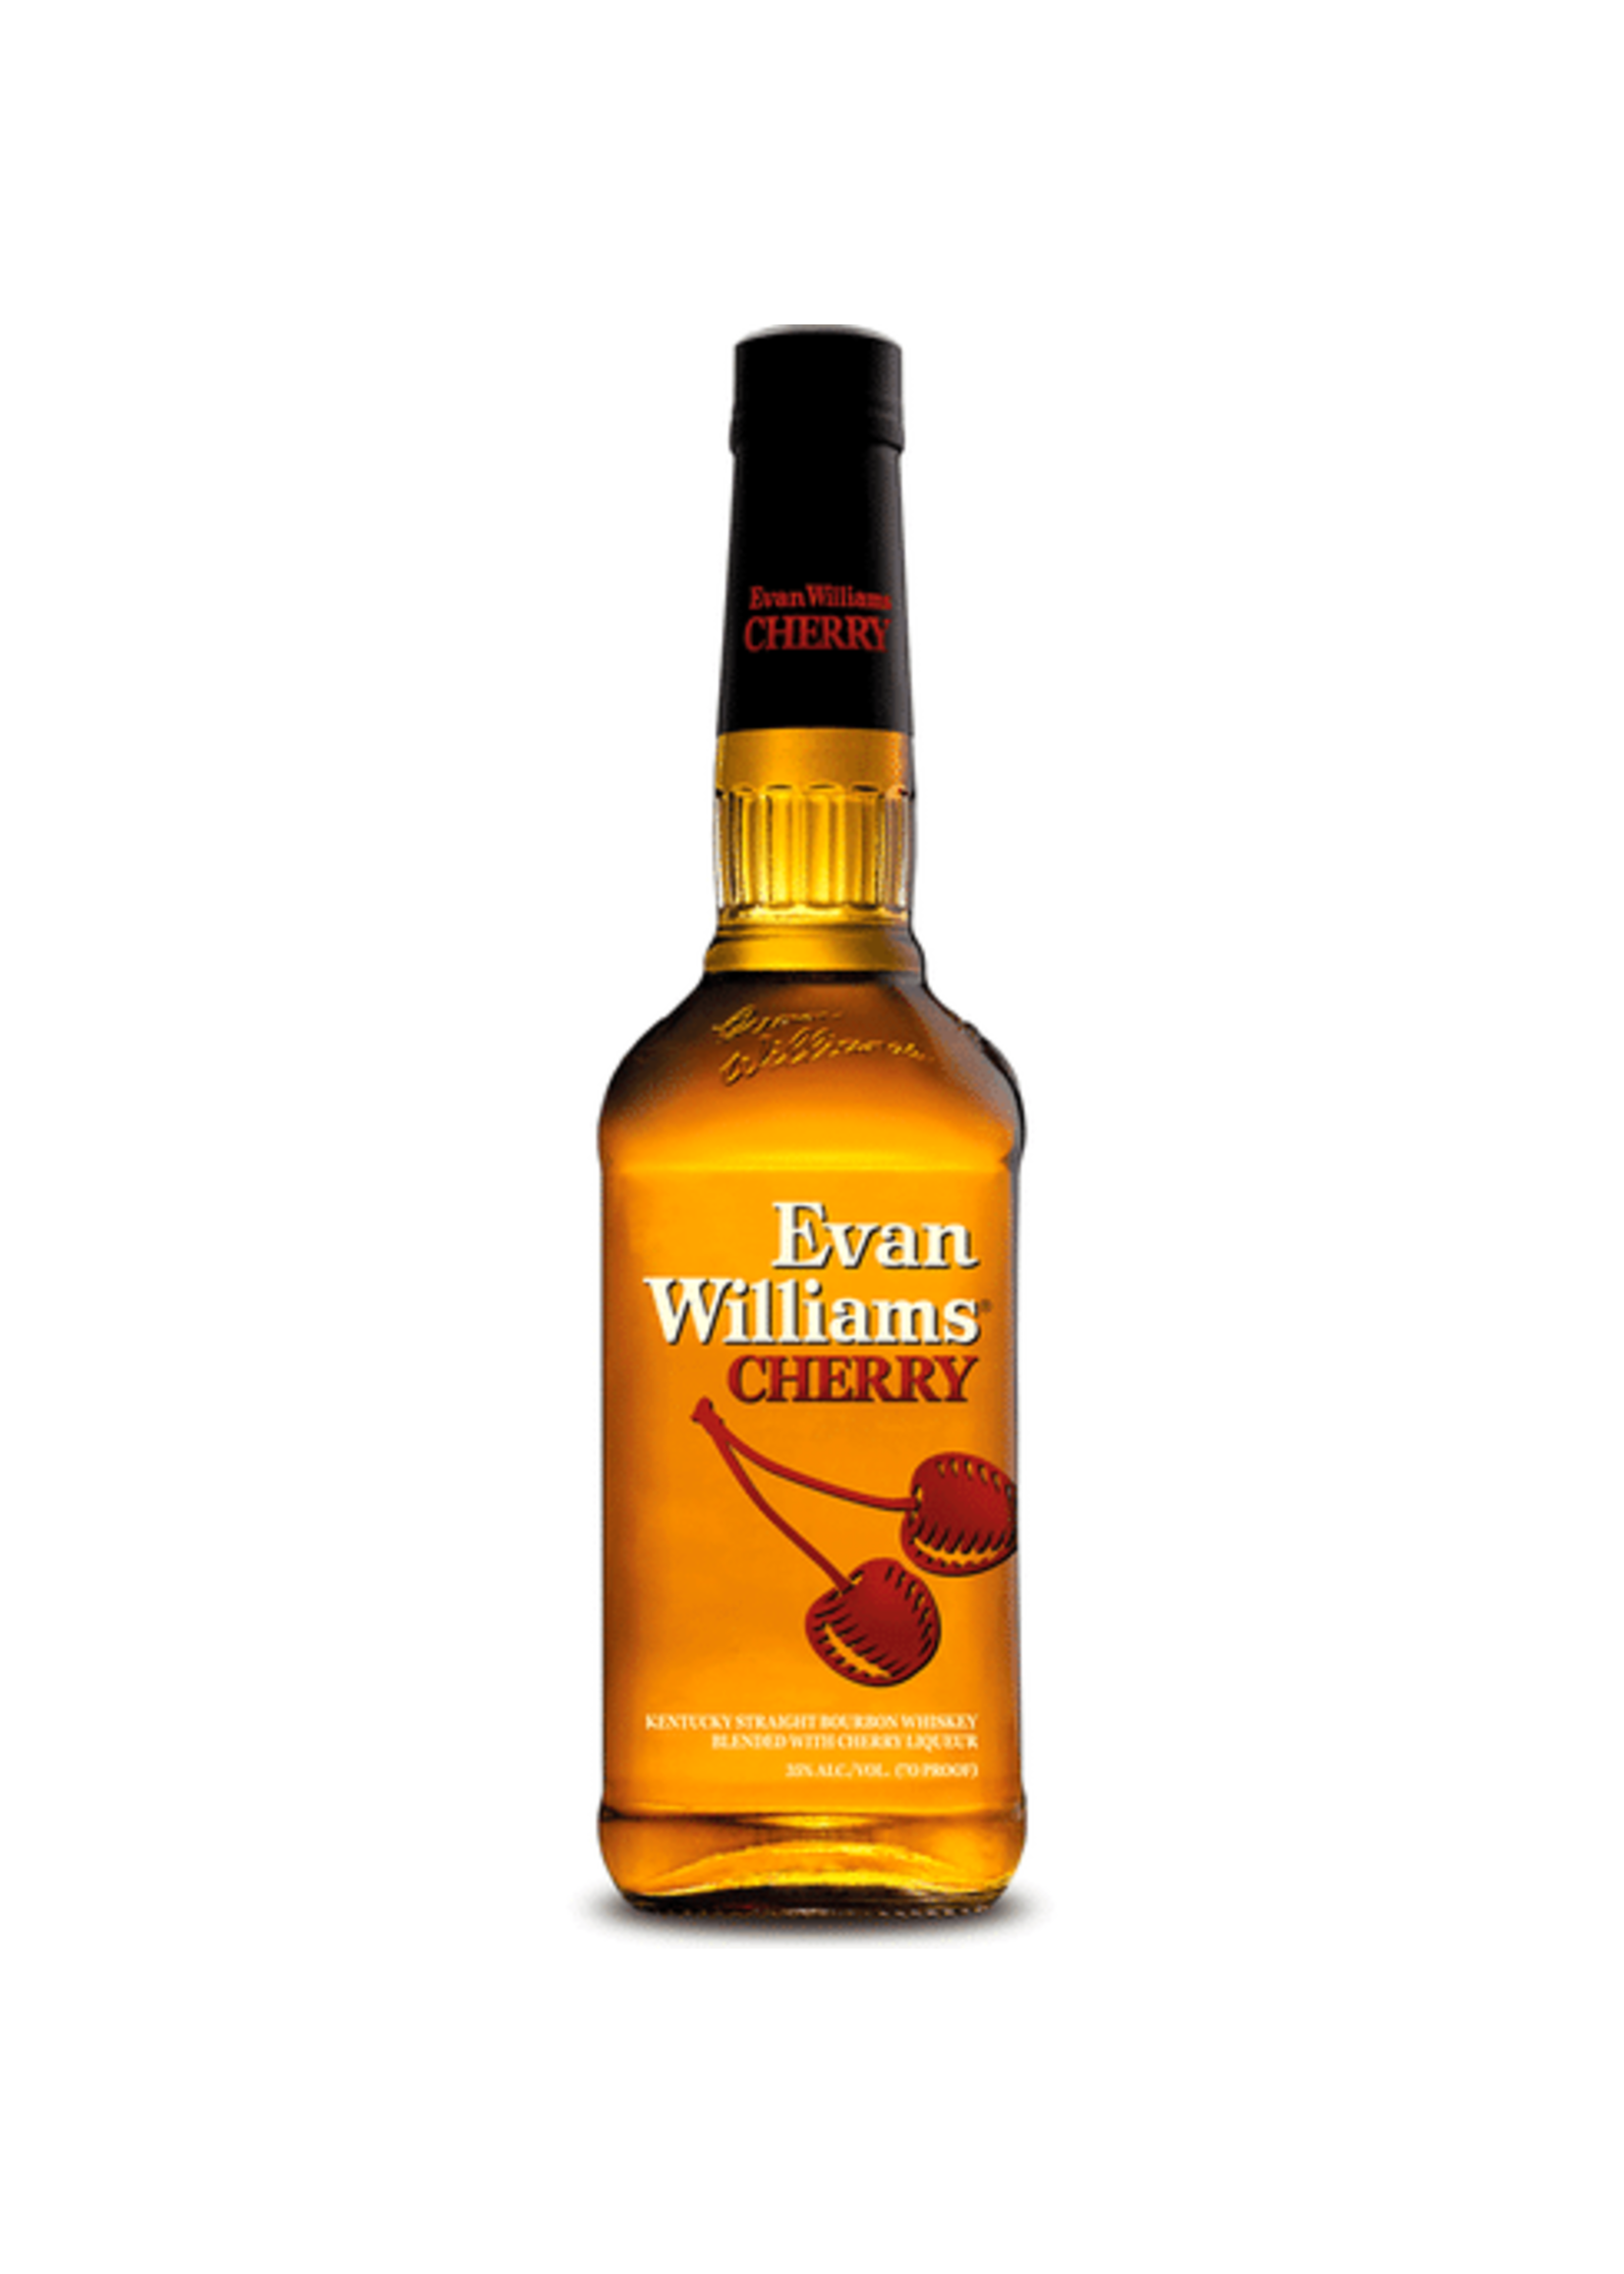 EVAN WILLIAMS EVAN WILLIAMS	CHERRY RESERVE	.750L